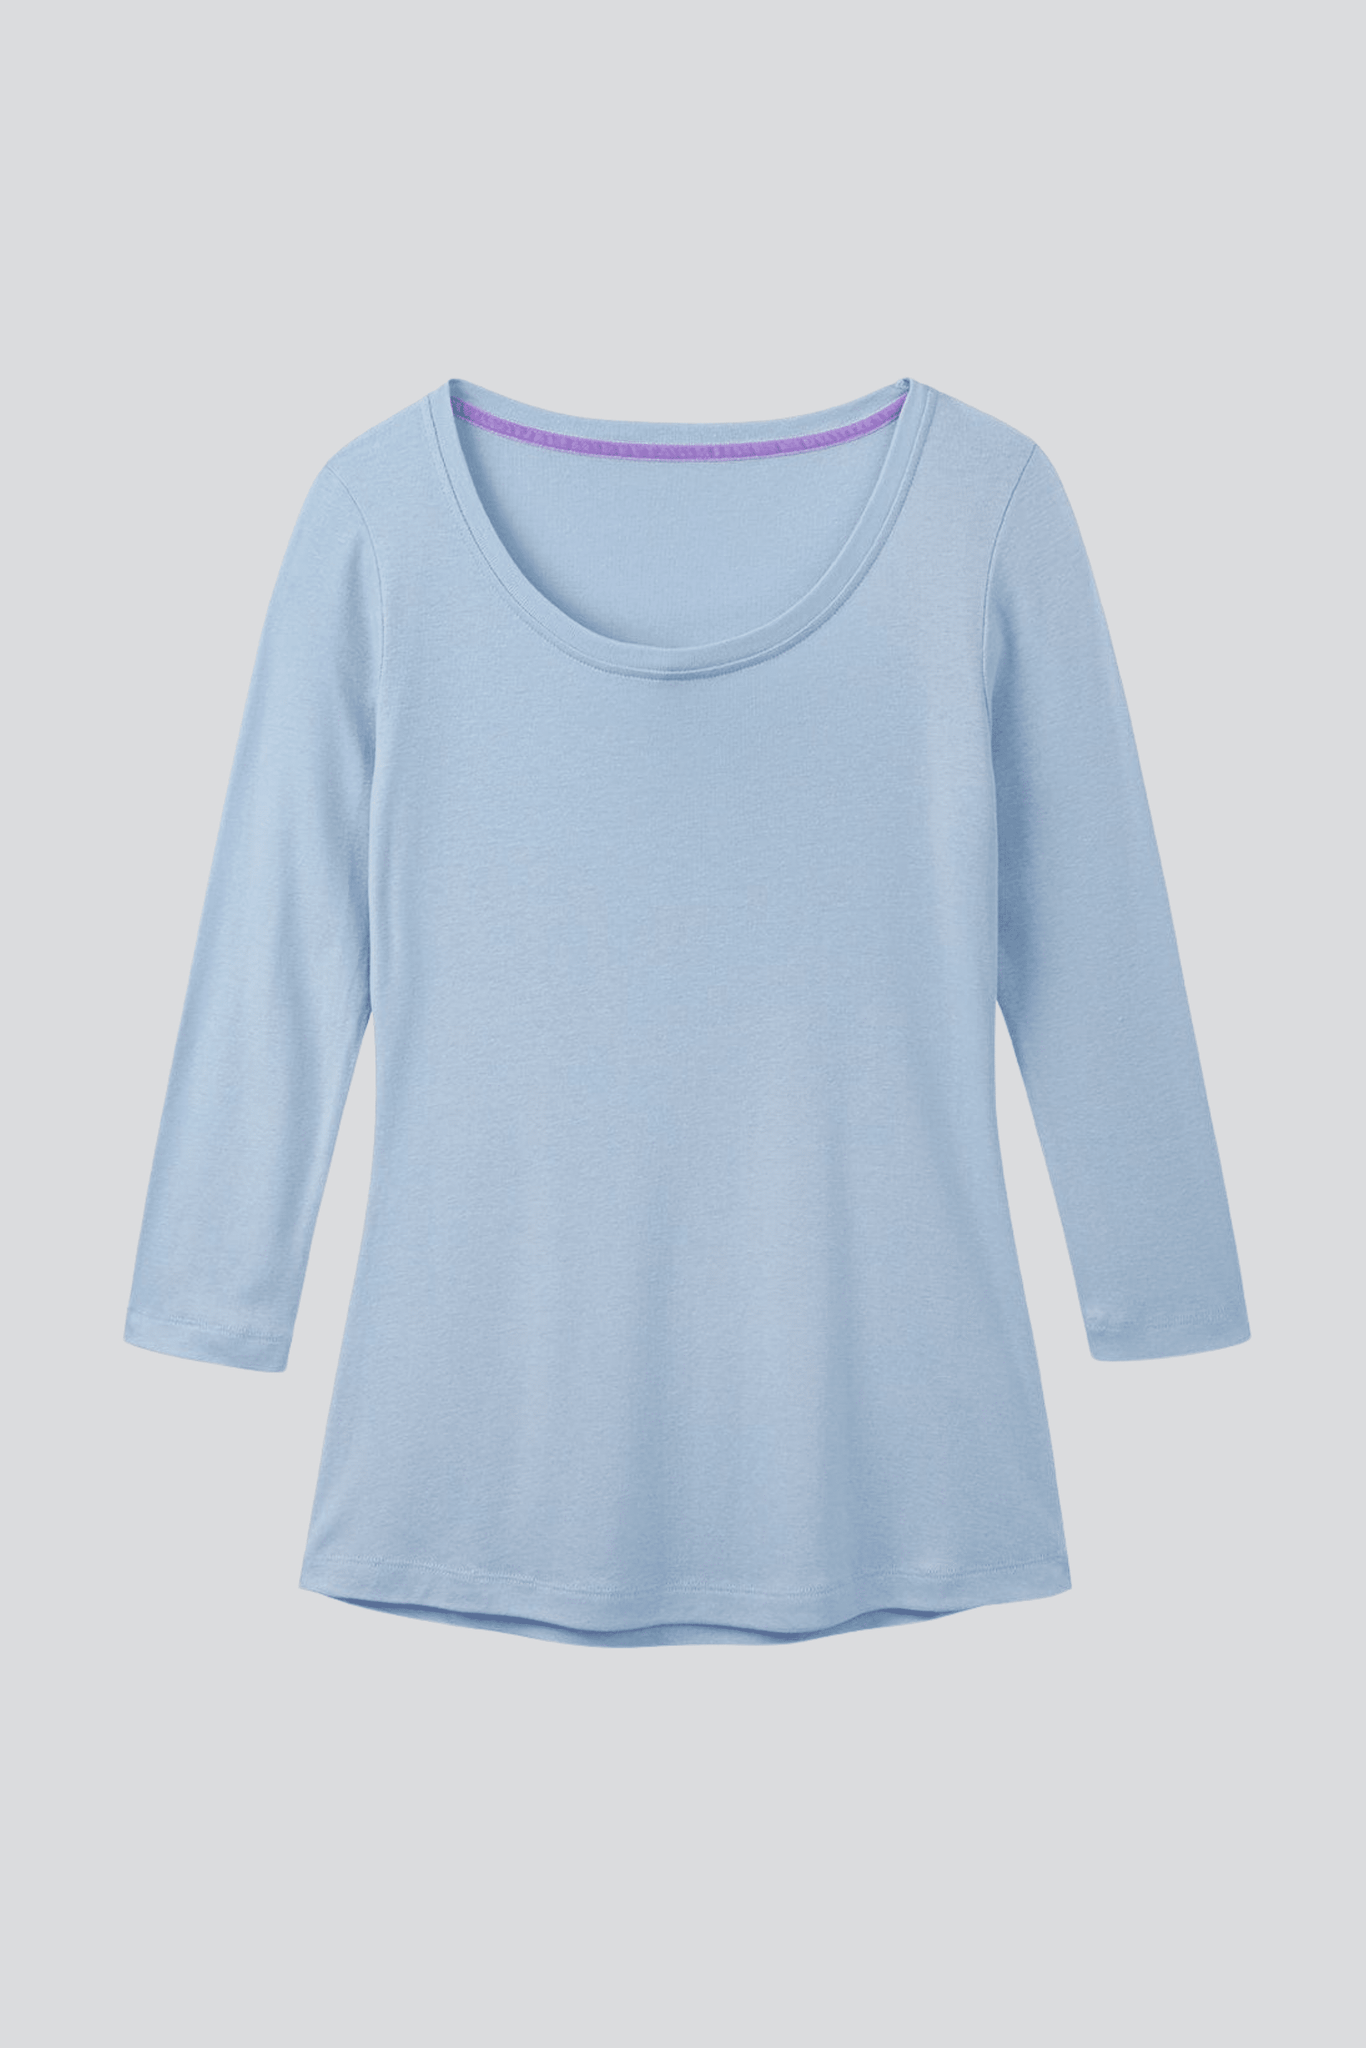 3/4 Sleeve Scoop Neck Cotton Modal Blend T-Shirt Women's 3/4 Sleeve T-shirt Lavender Hill